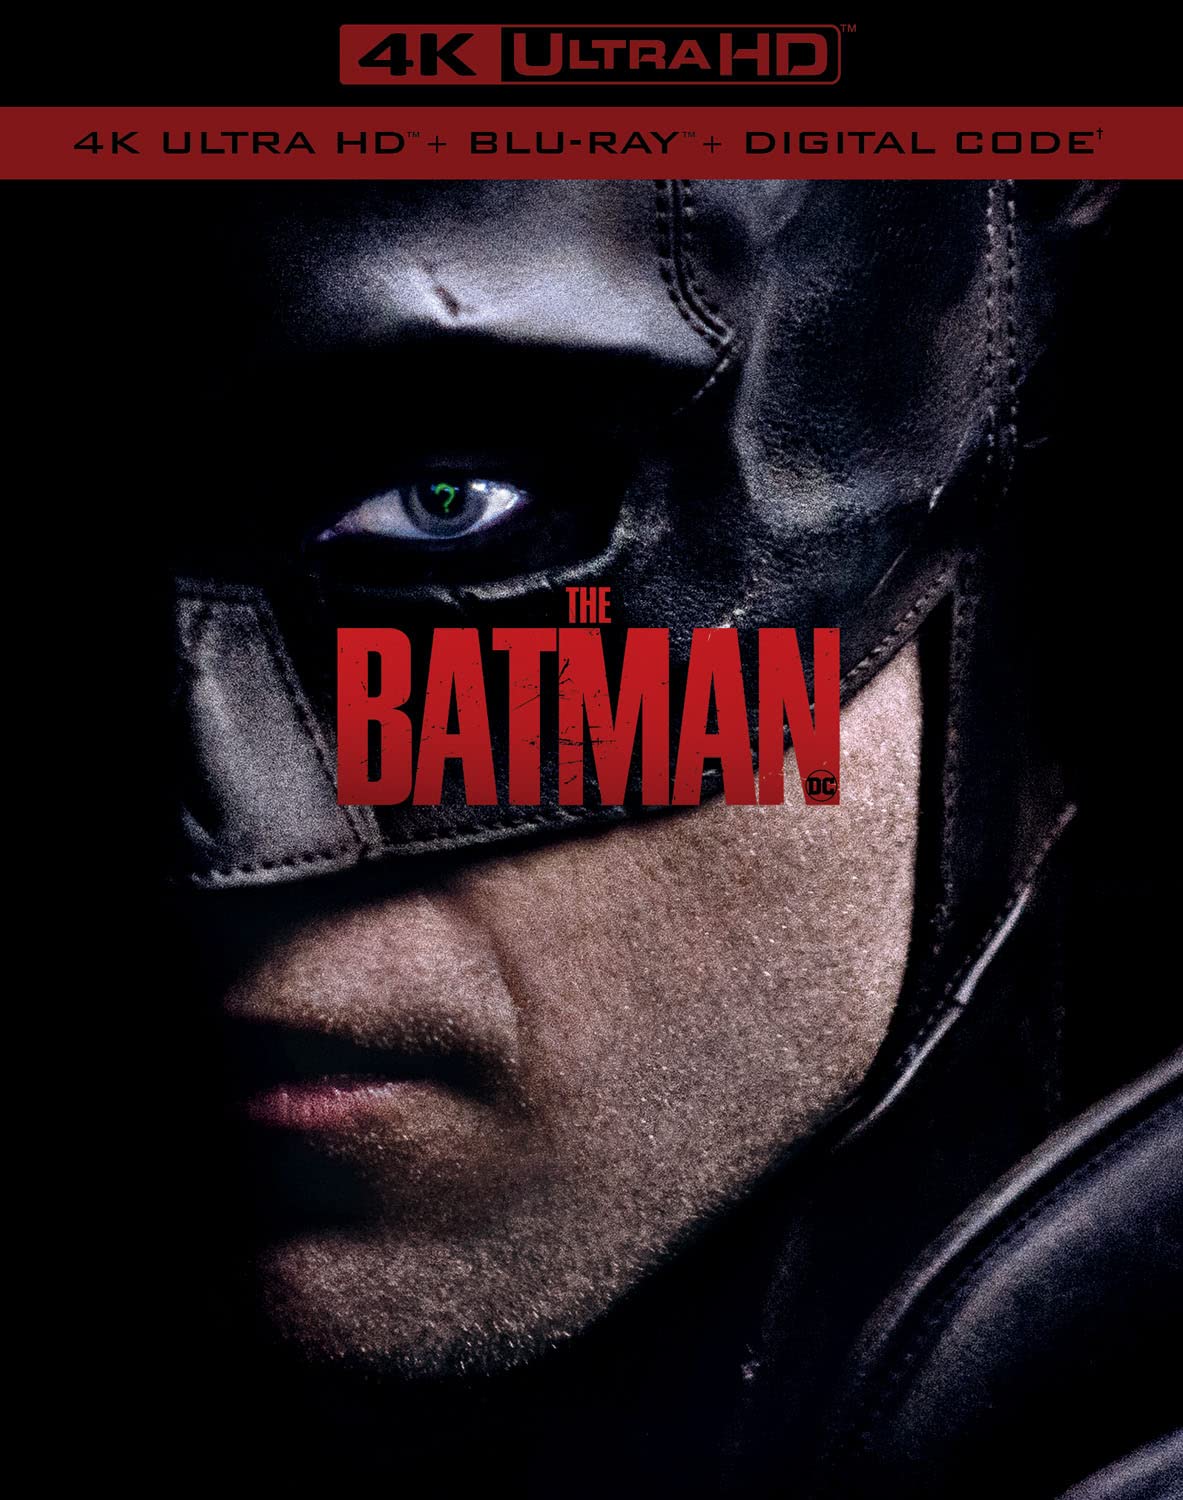 The Batman (2022) Vudu or Movies Anywhere 4K code